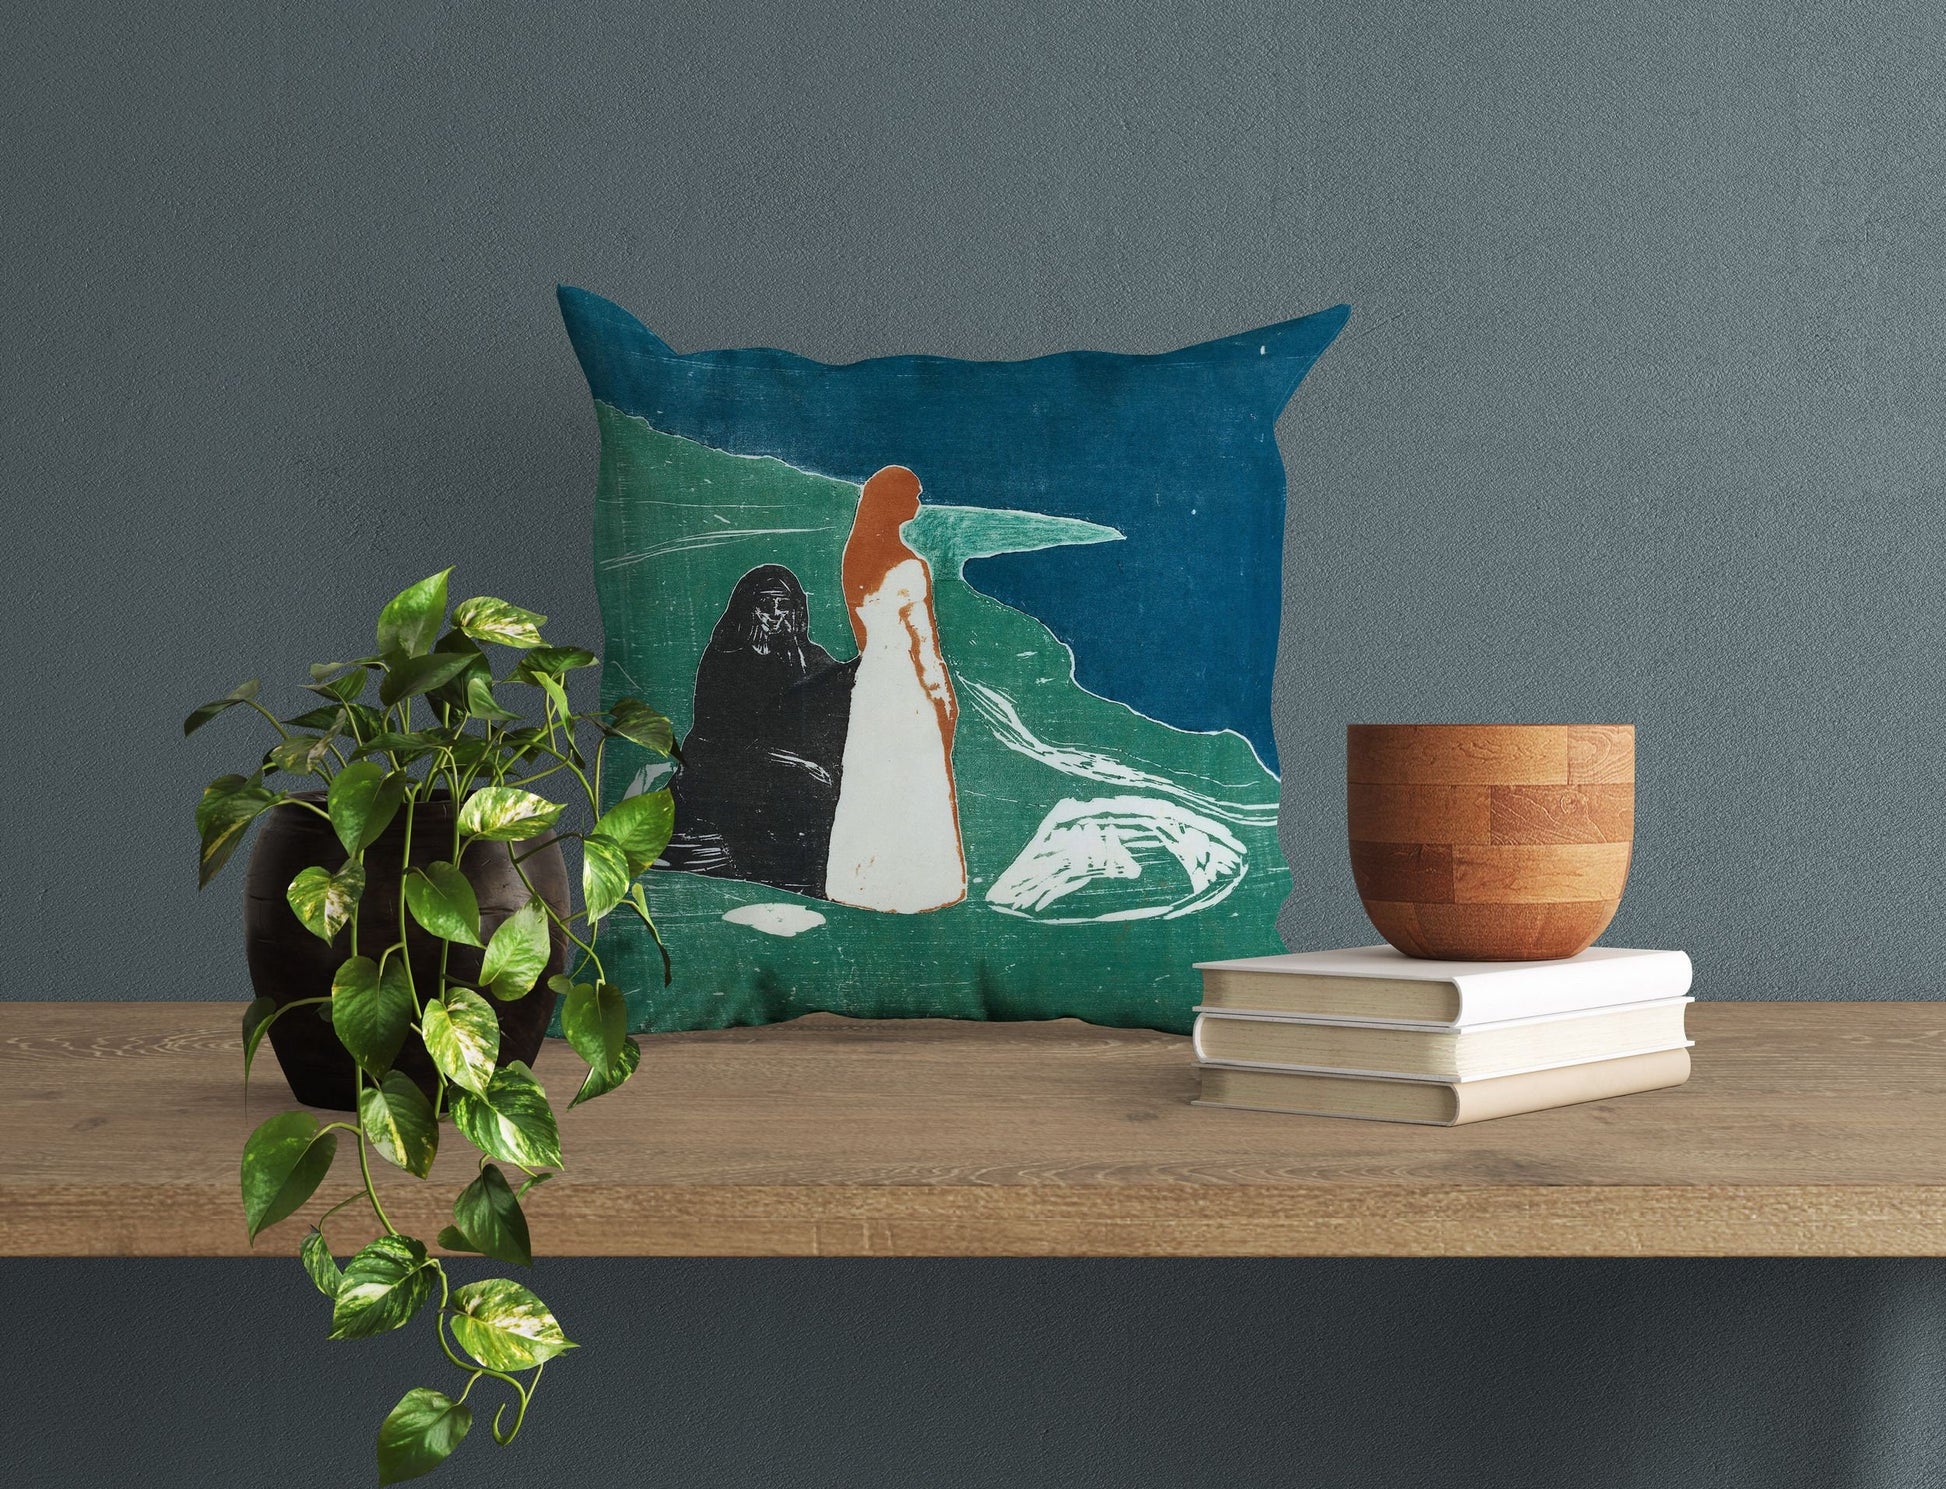 Edvard Munch Famous Art Two Women On The Beach, Toss Pillow, Abstract Throw Pillow, Artist Pillow, Green Pillow Cases, Modern Pillow